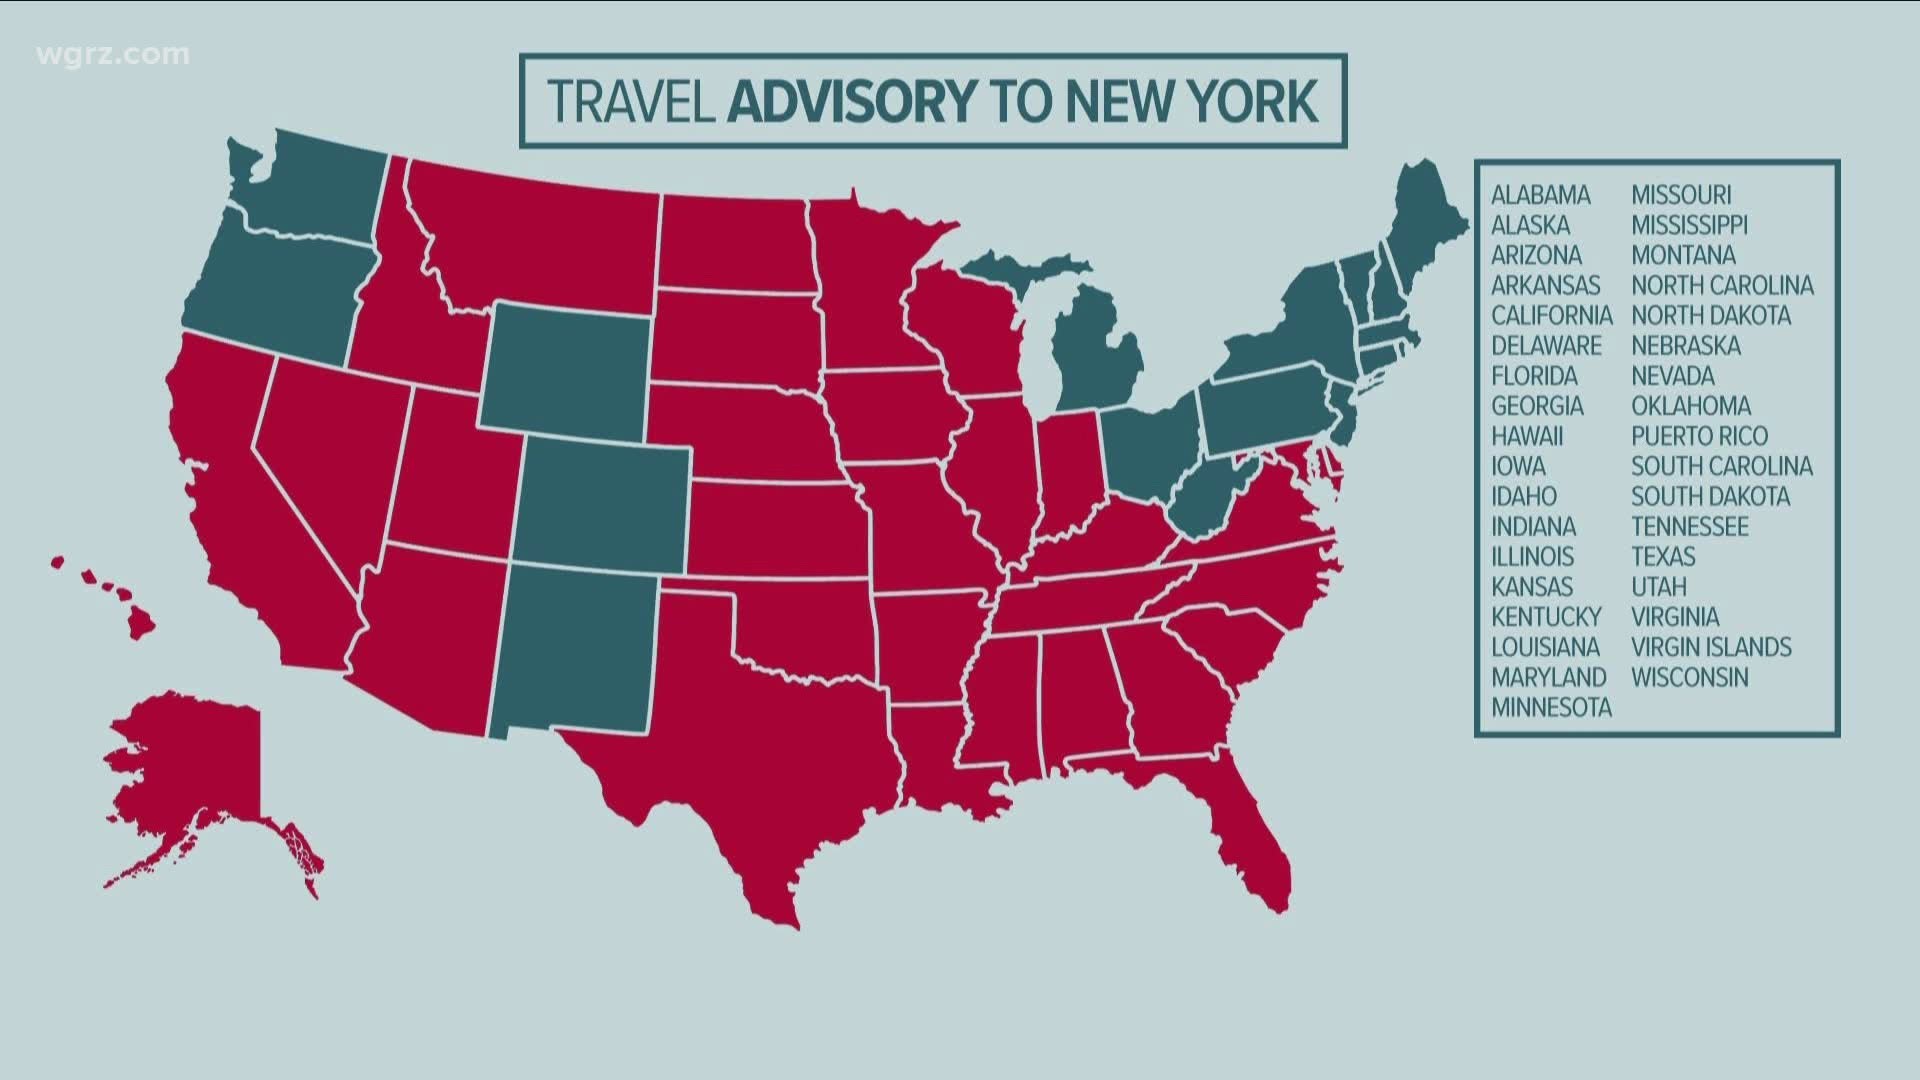 Alaska & Delaware added to travel advisory